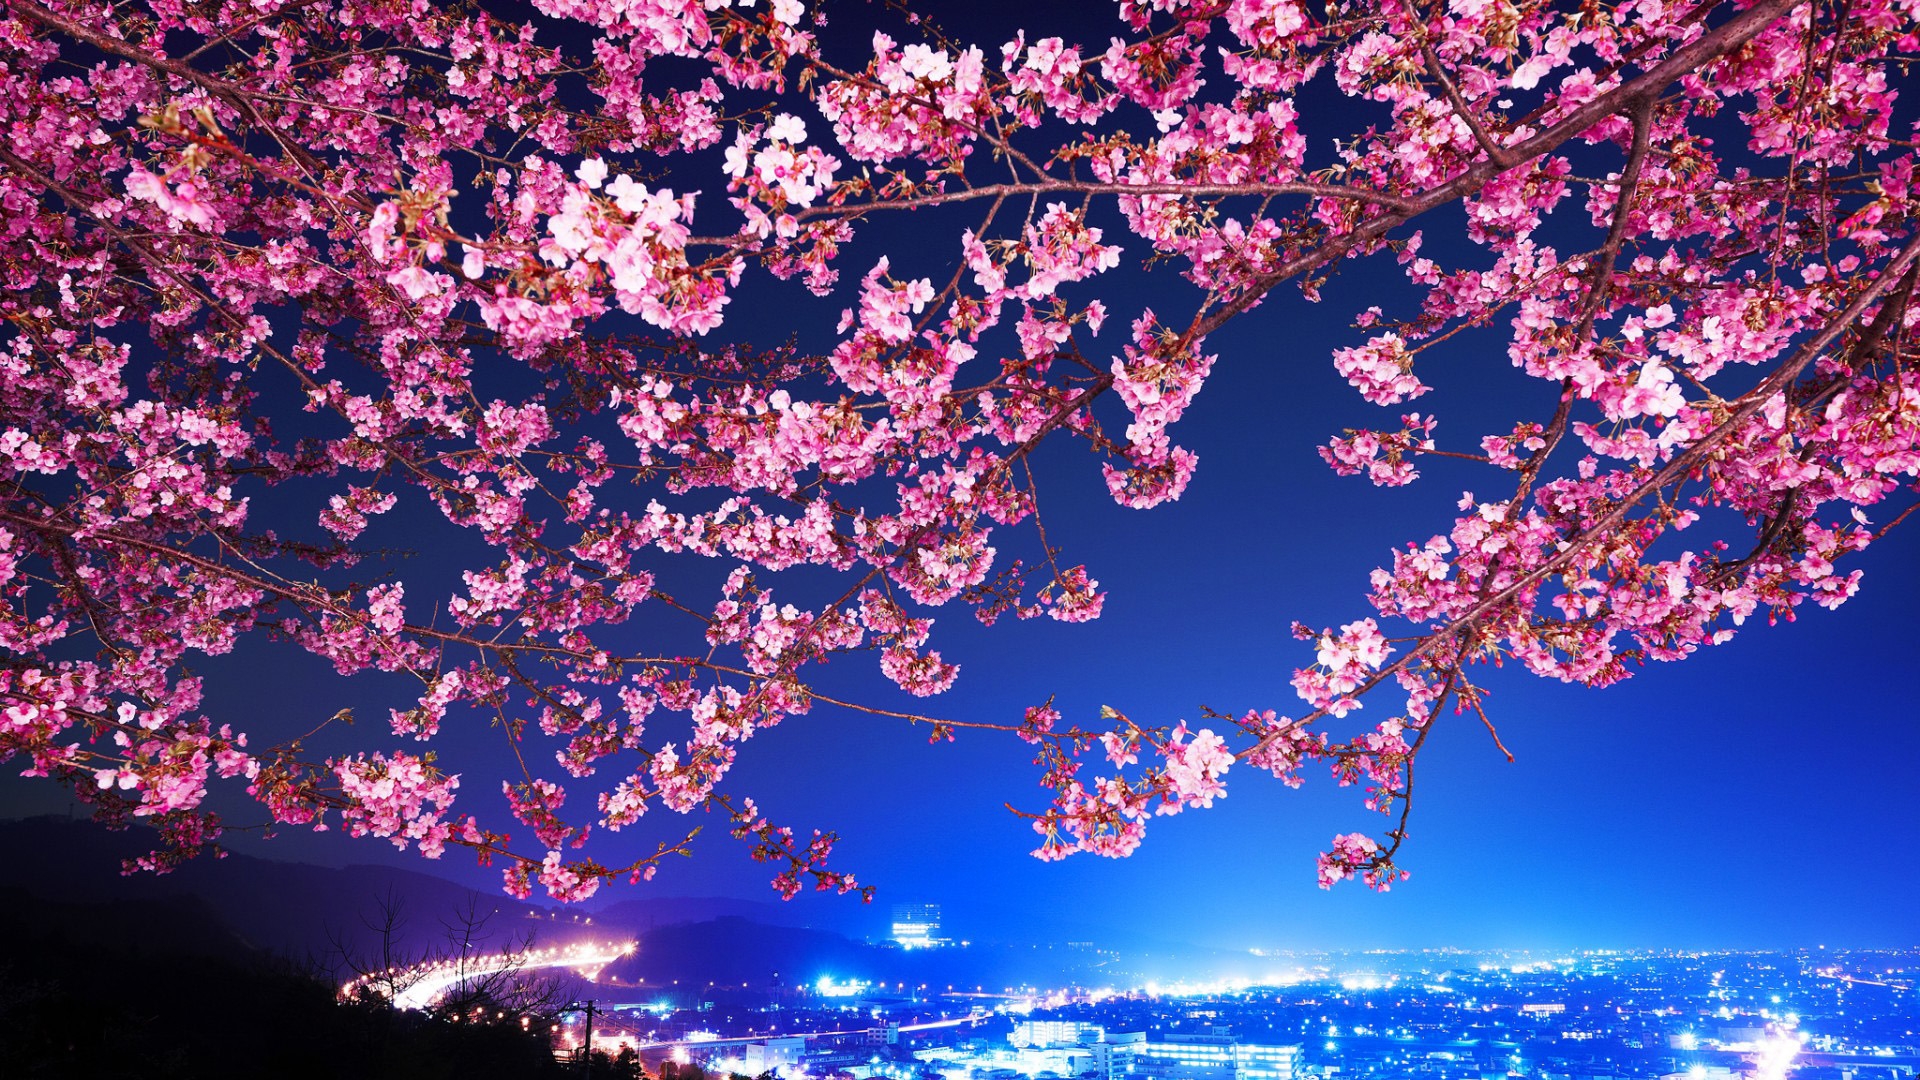 Lovely Cherry Blossom for 1920 x 1080 HDTV 1080p resolution